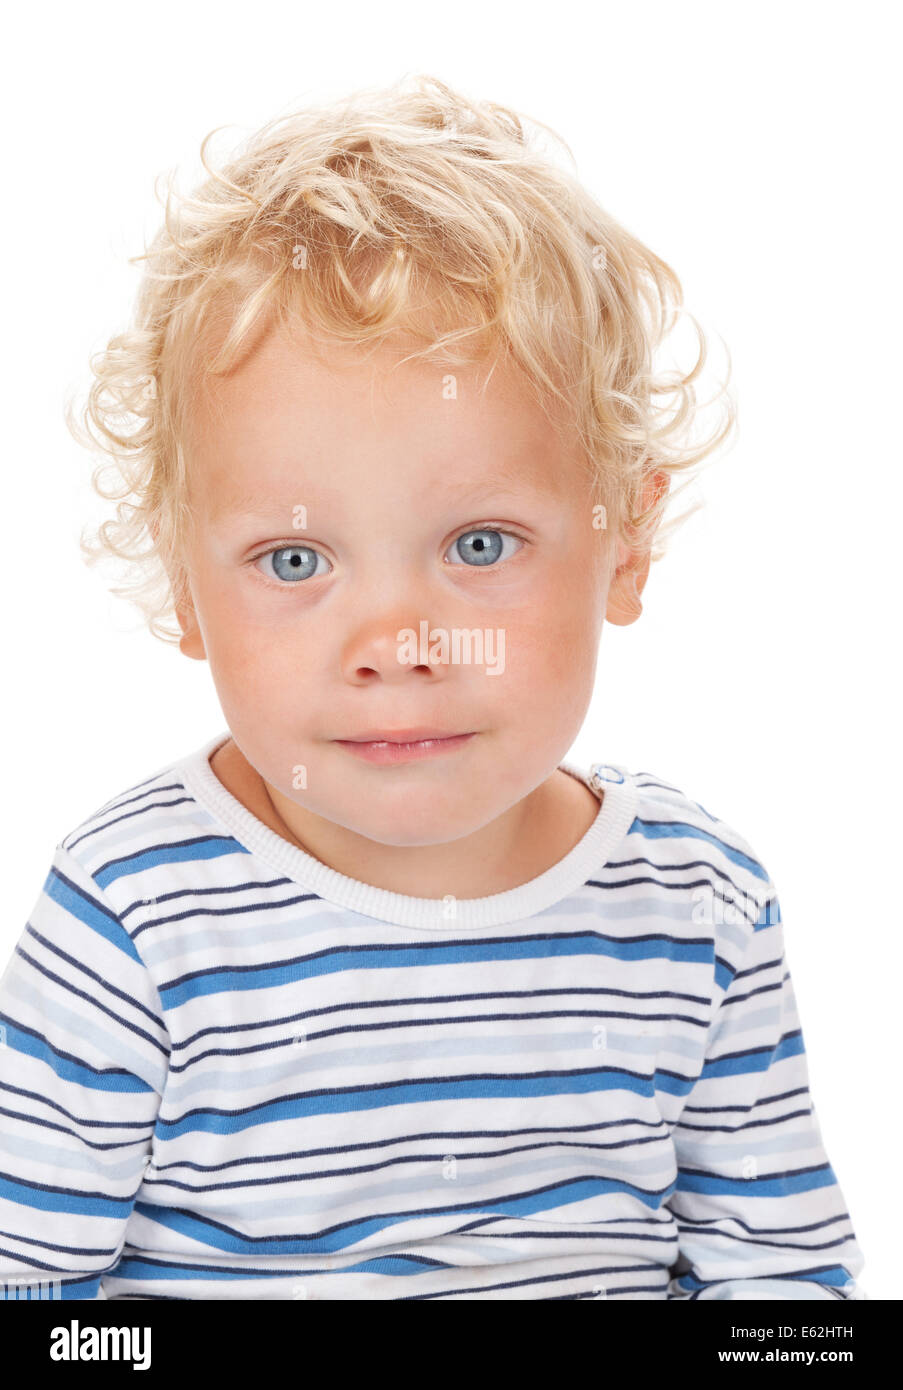 Les cheveux blancs et les yeux bleus du bébé. Isolé sur fond blanc Banque D'Images